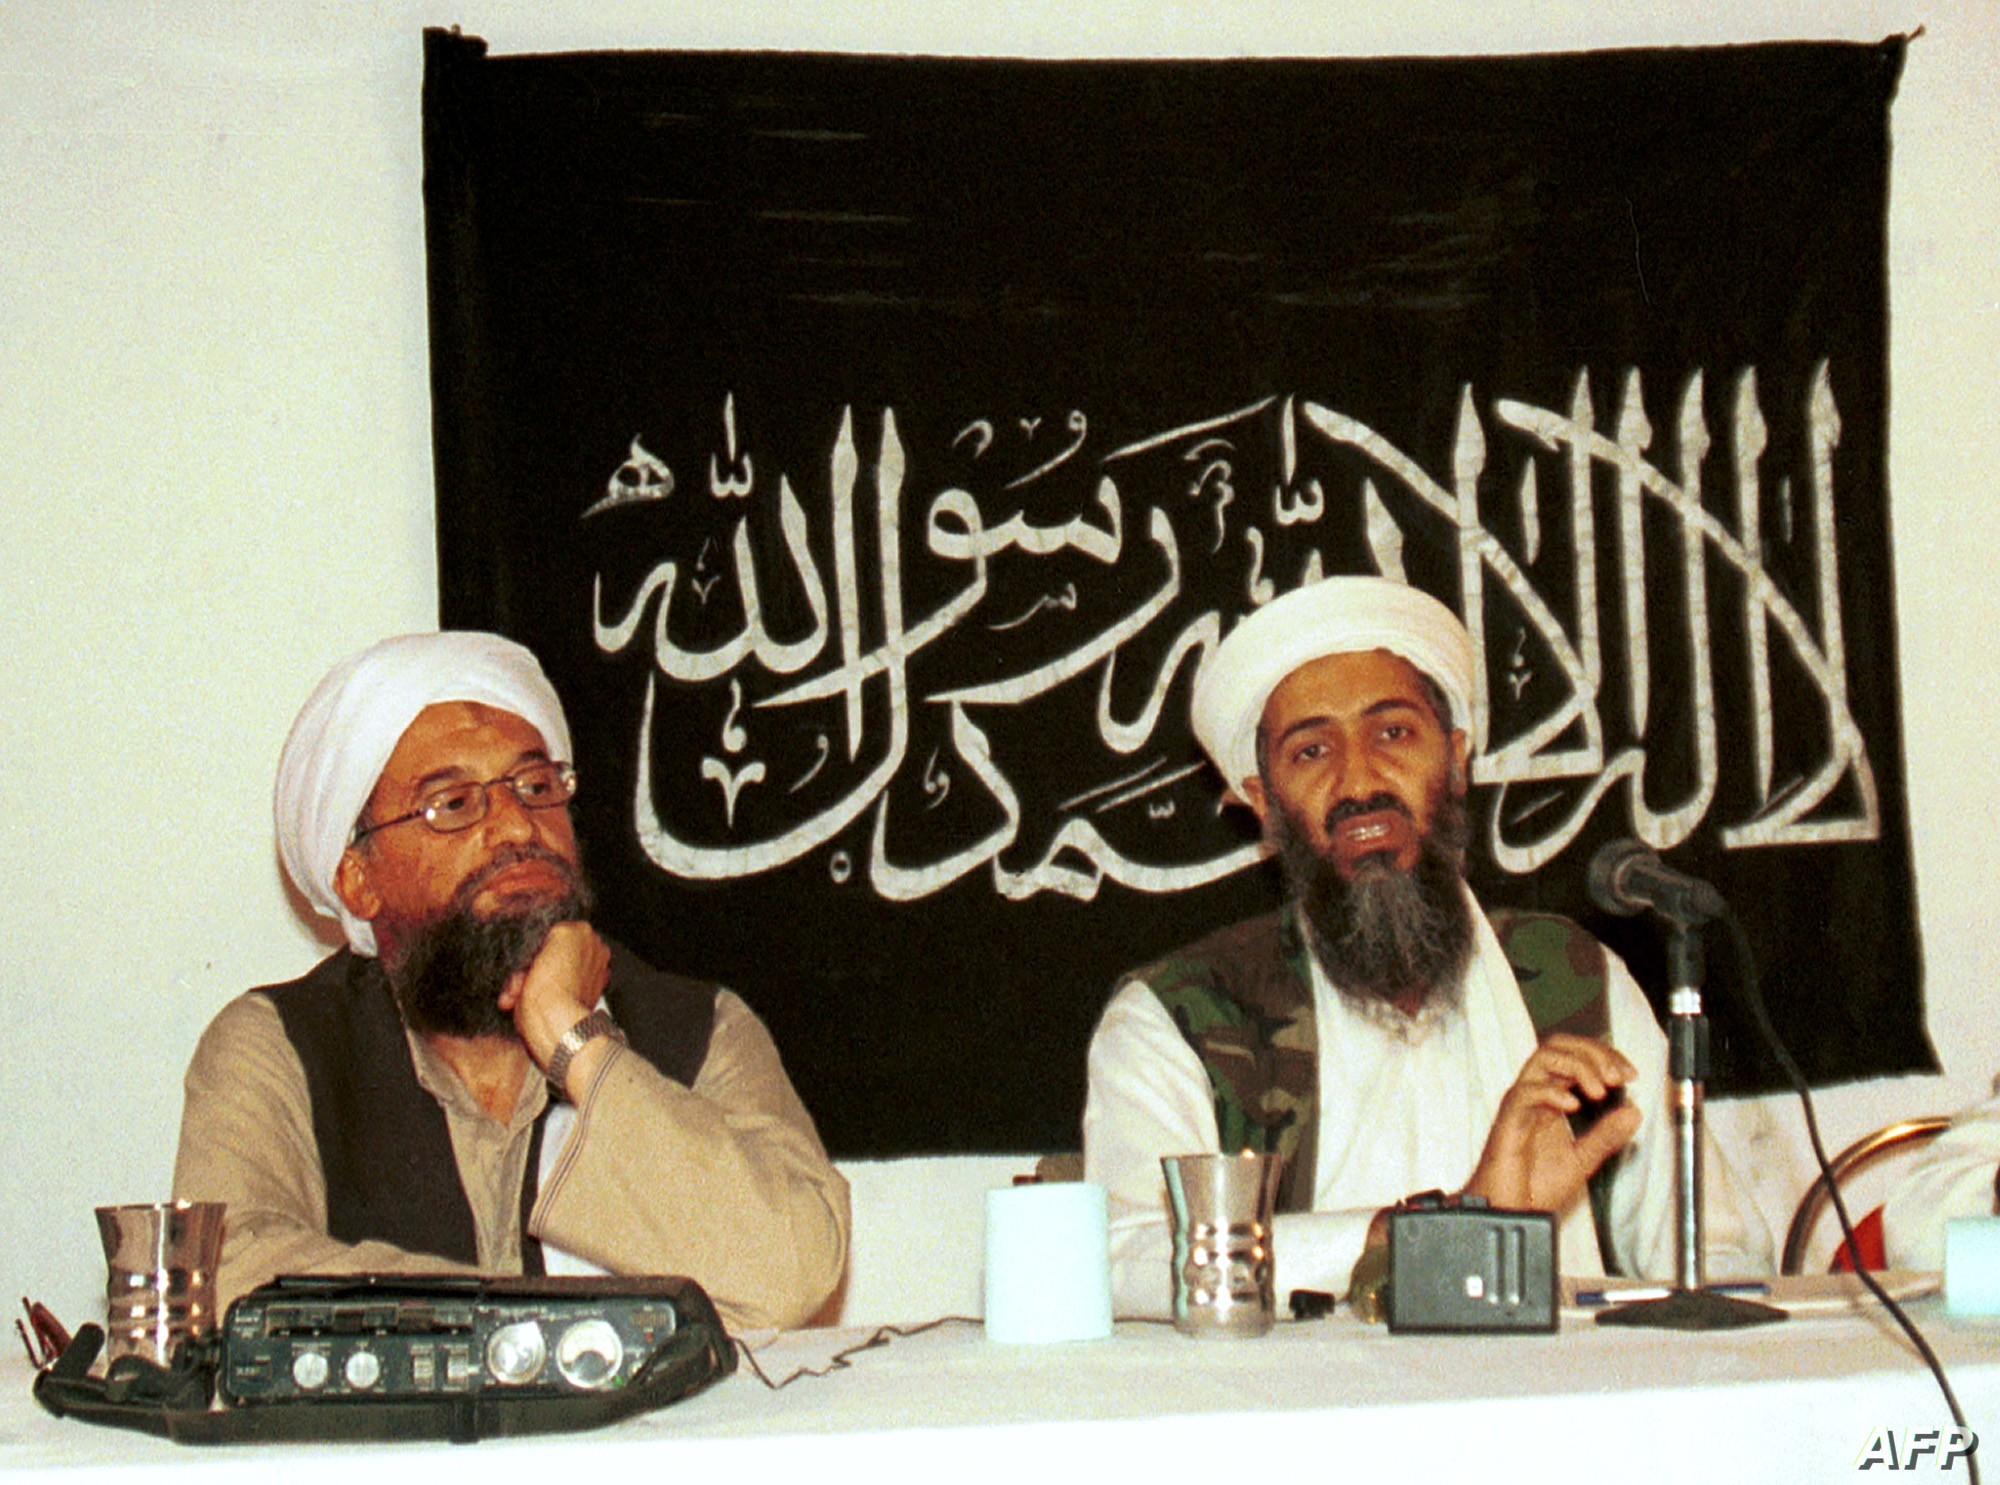 أسامة بن لادن الزعيم السابق لتنظيم "القاعدة" يمين وخليفته أيمن الظاهري يسار - إنترنت